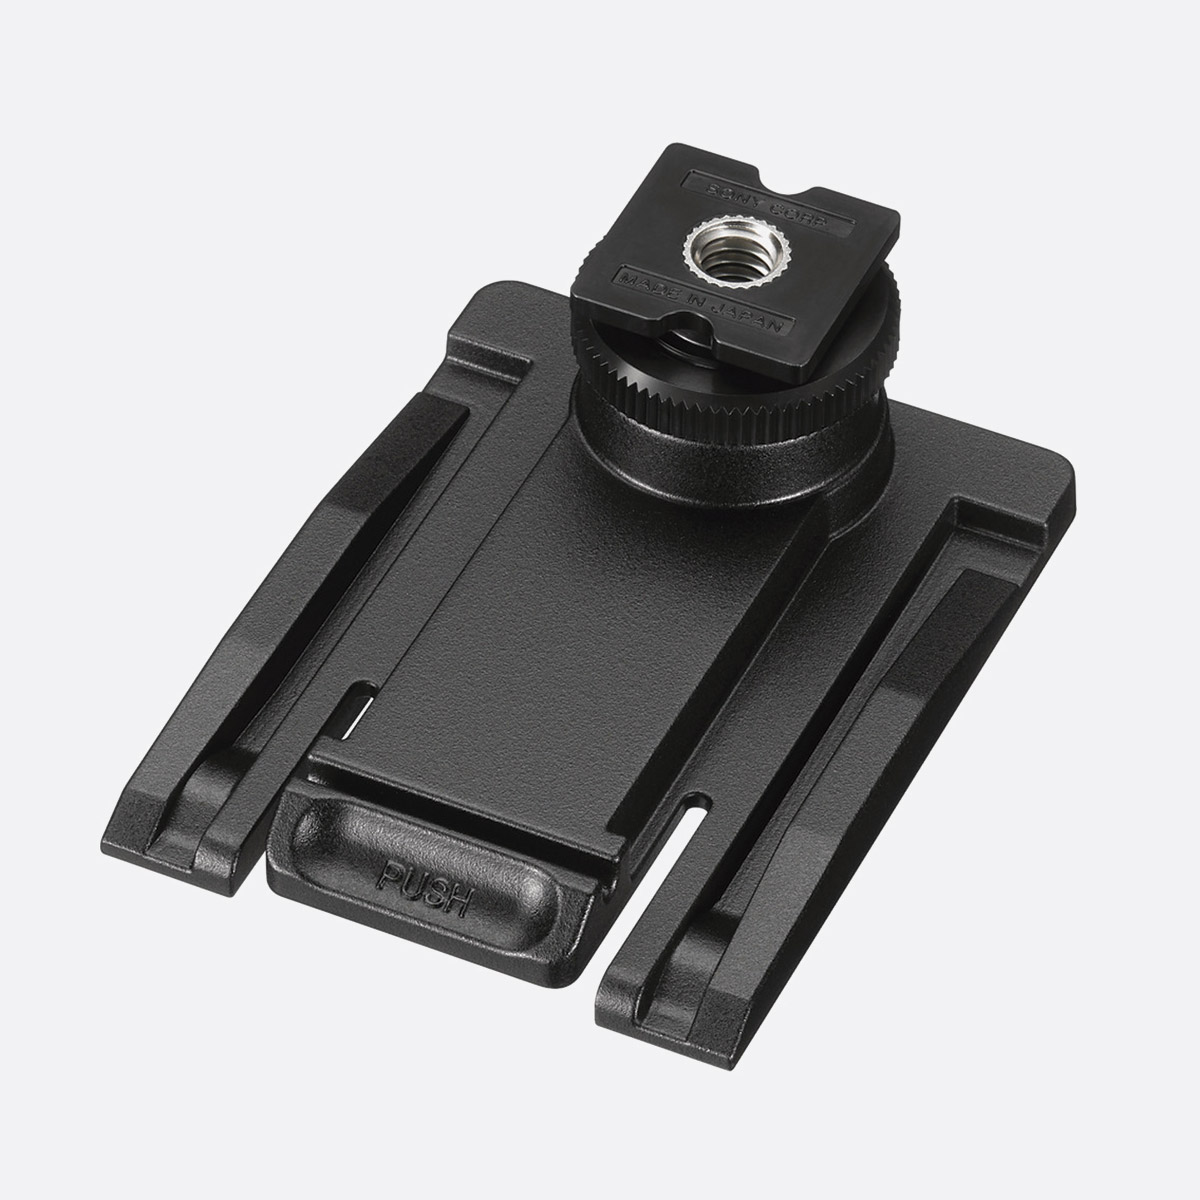 SONY UWP-D26 SYSTEM SANS FIL émetteurs micro cravate et enfichable,  récepteur portable, CH33-41 (K33)